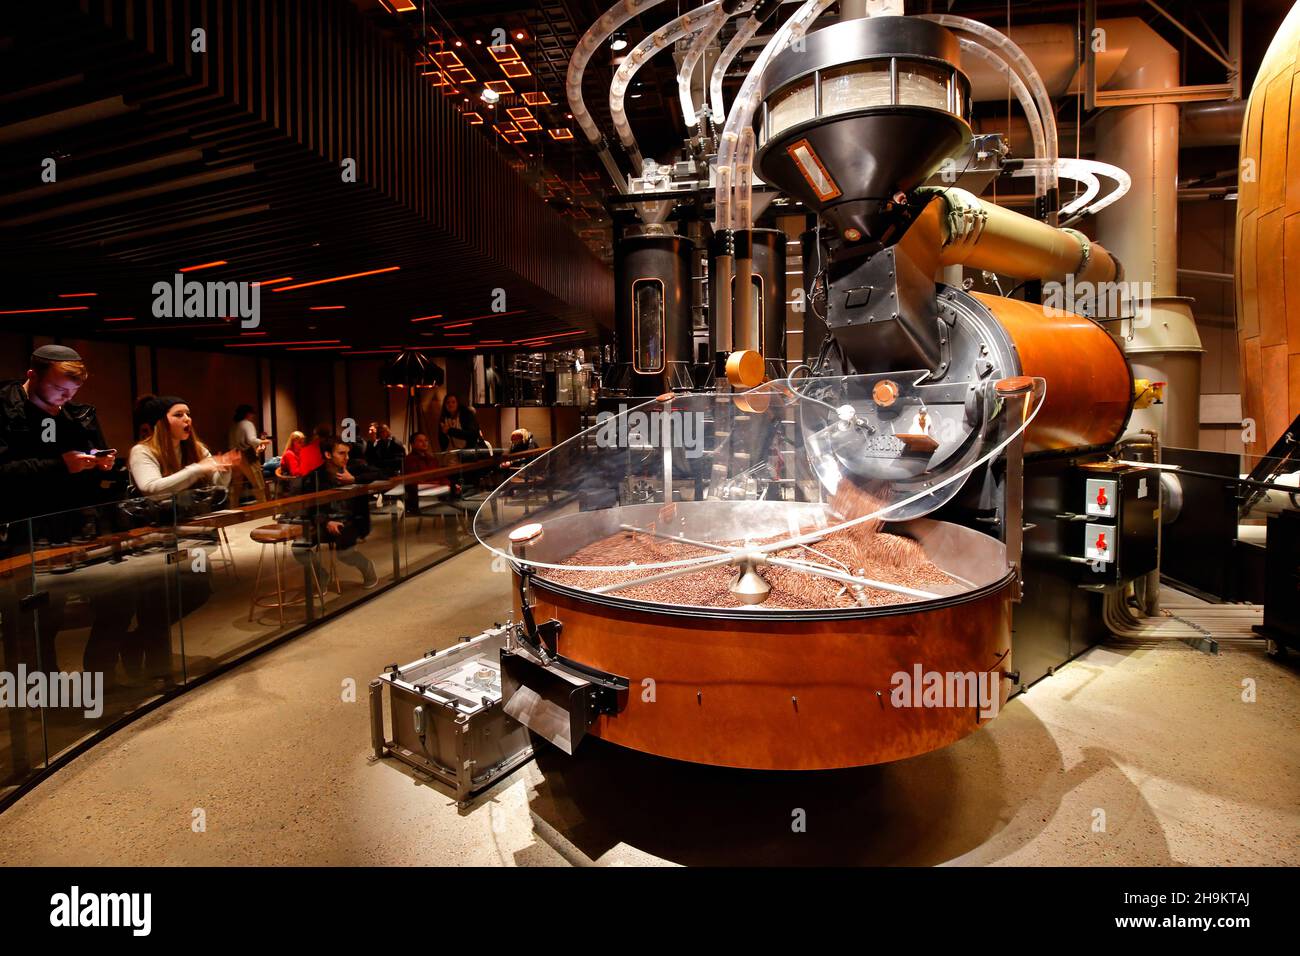 La gente mira los granos de café recién asados que se vierten desde una gran montaña rusa de Probat situada dentro del dominio de la Reserva Starbucks en Nueva York. Foto de stock